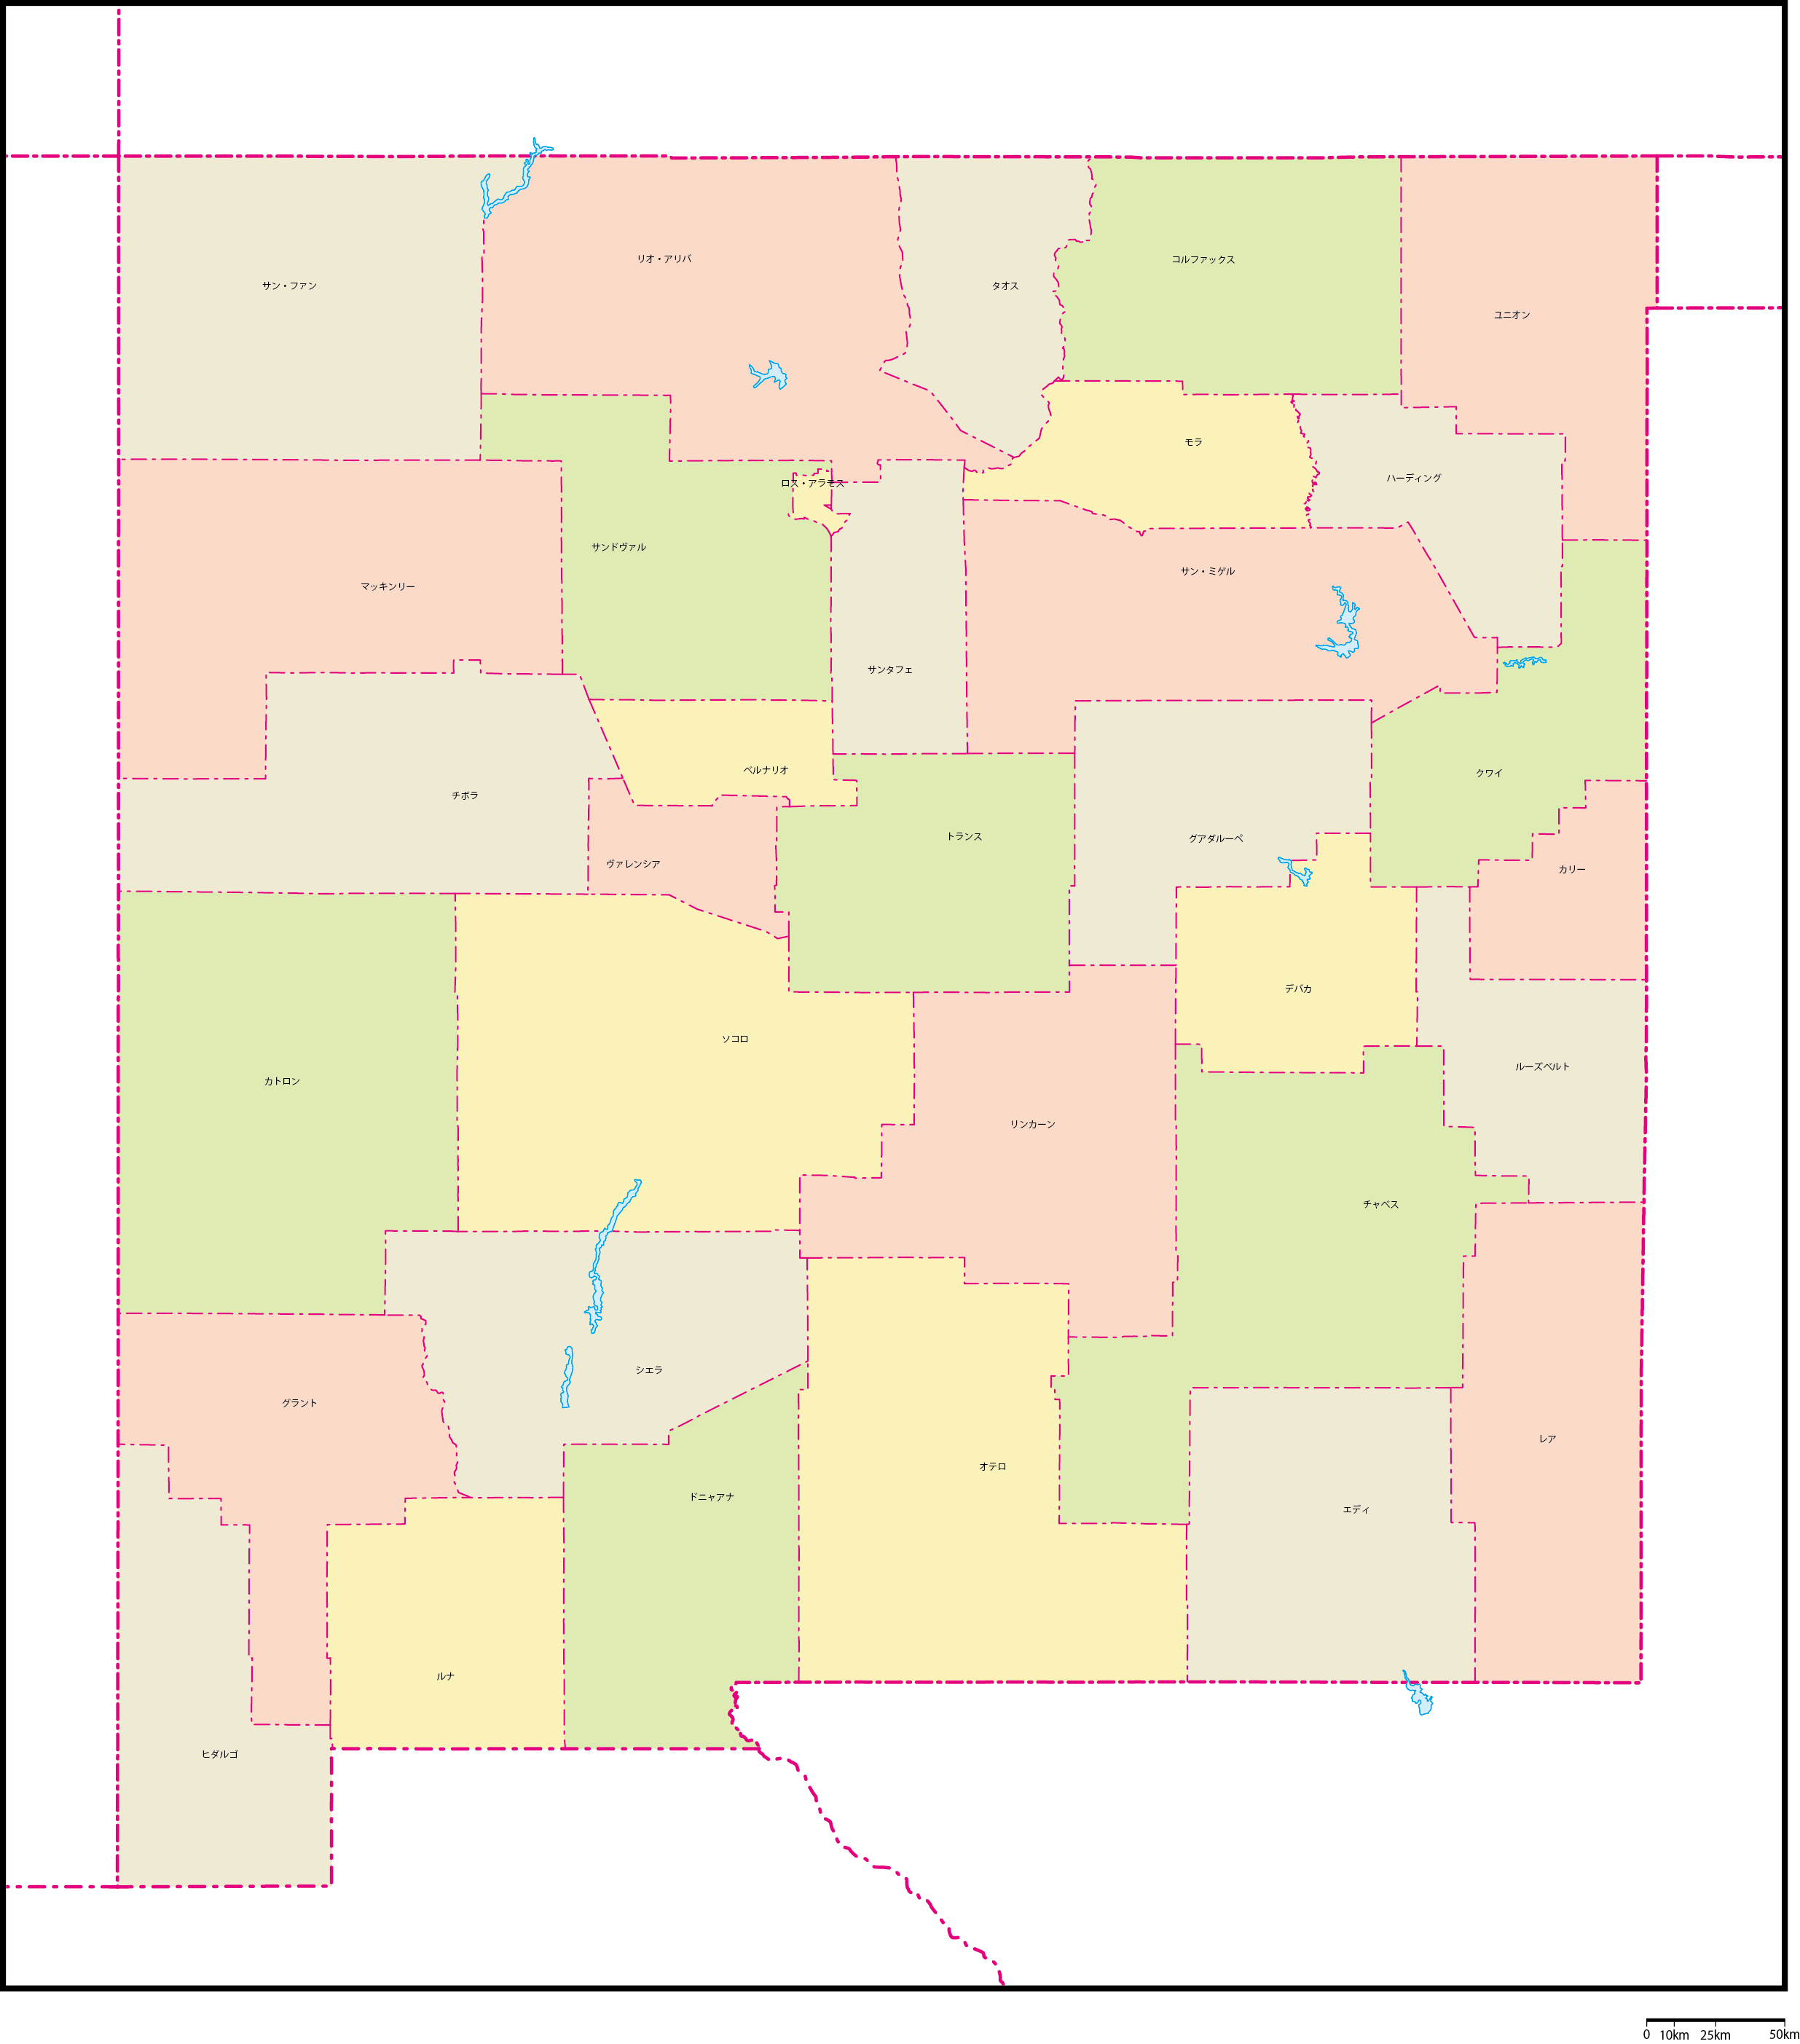 ニューメキシコ州郡色分け地図郡名あり(日本語)フリーデータの画像